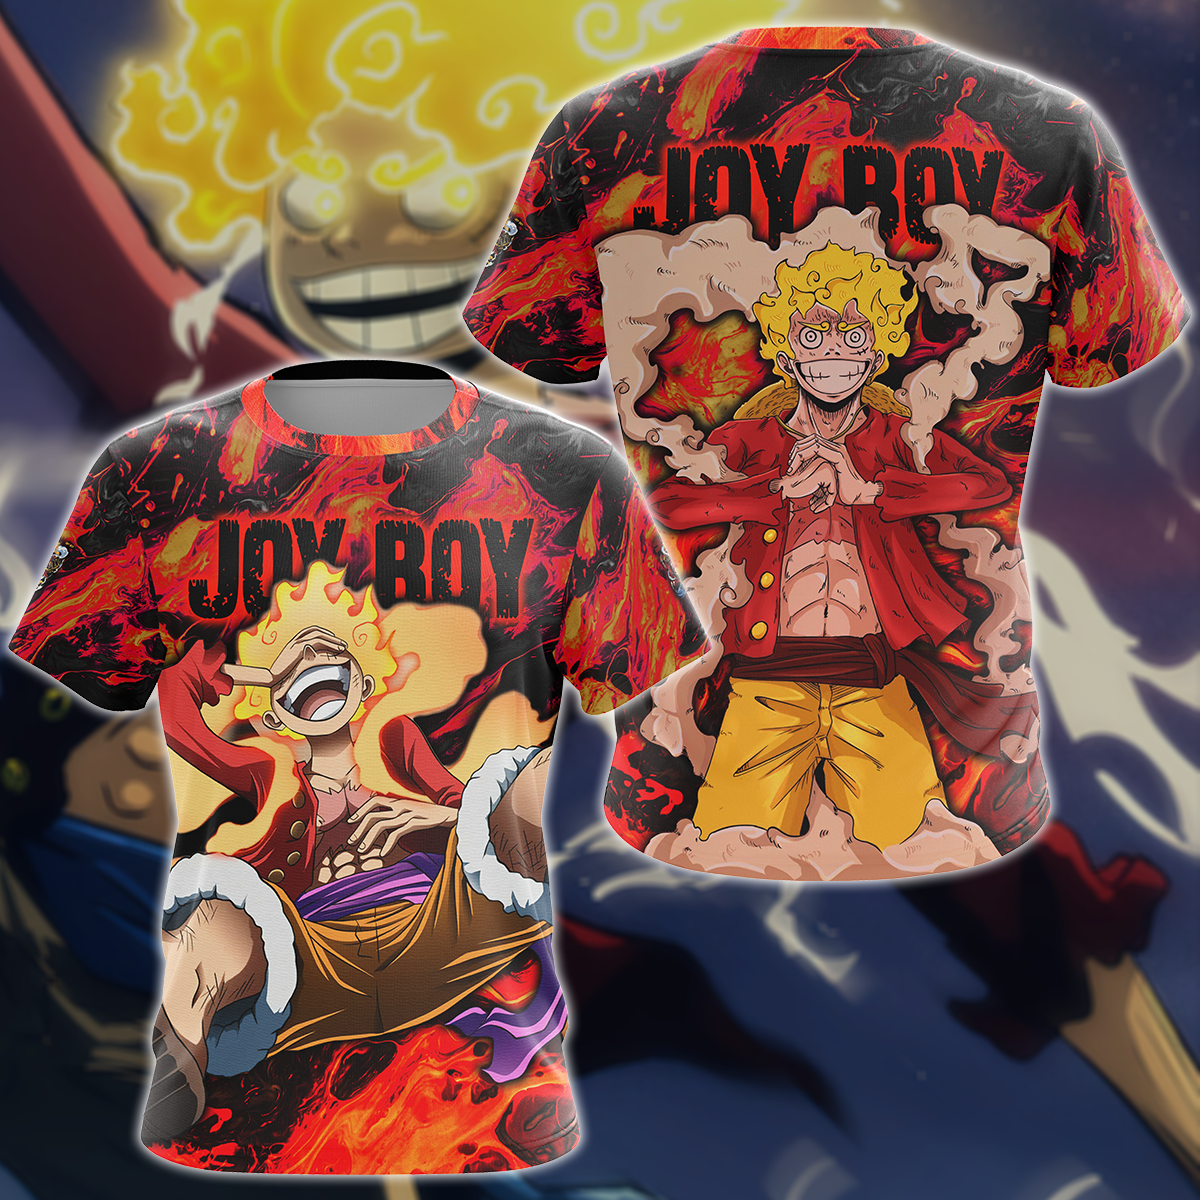 Hot Luffy Gear 5 Joy Boy One Piece Shirt in 2023